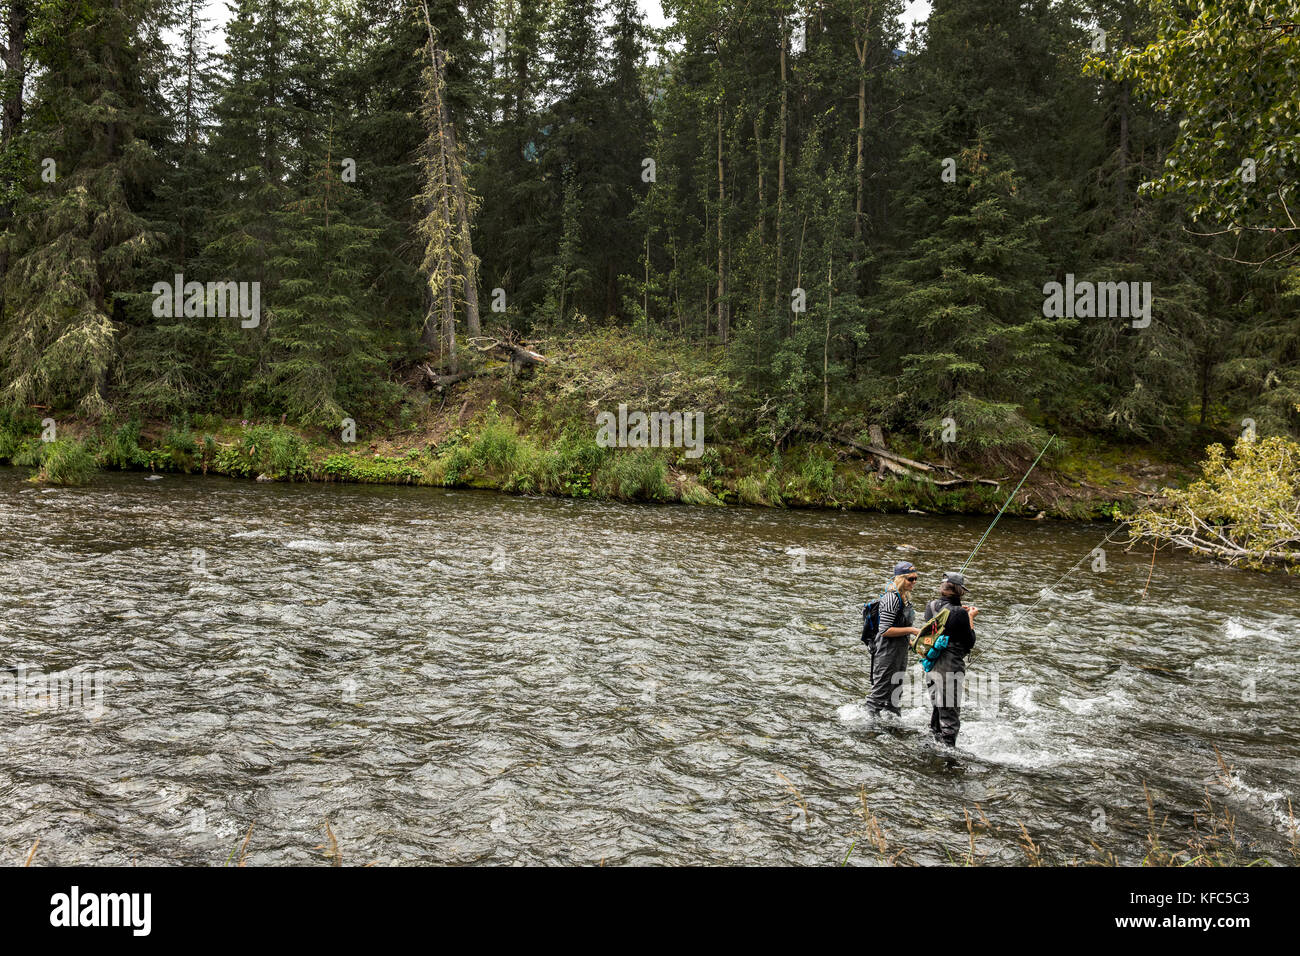 USA, Alaska, Coopers Landing, Kenai River, fishermen fishing on the Kenai river Stock Photo